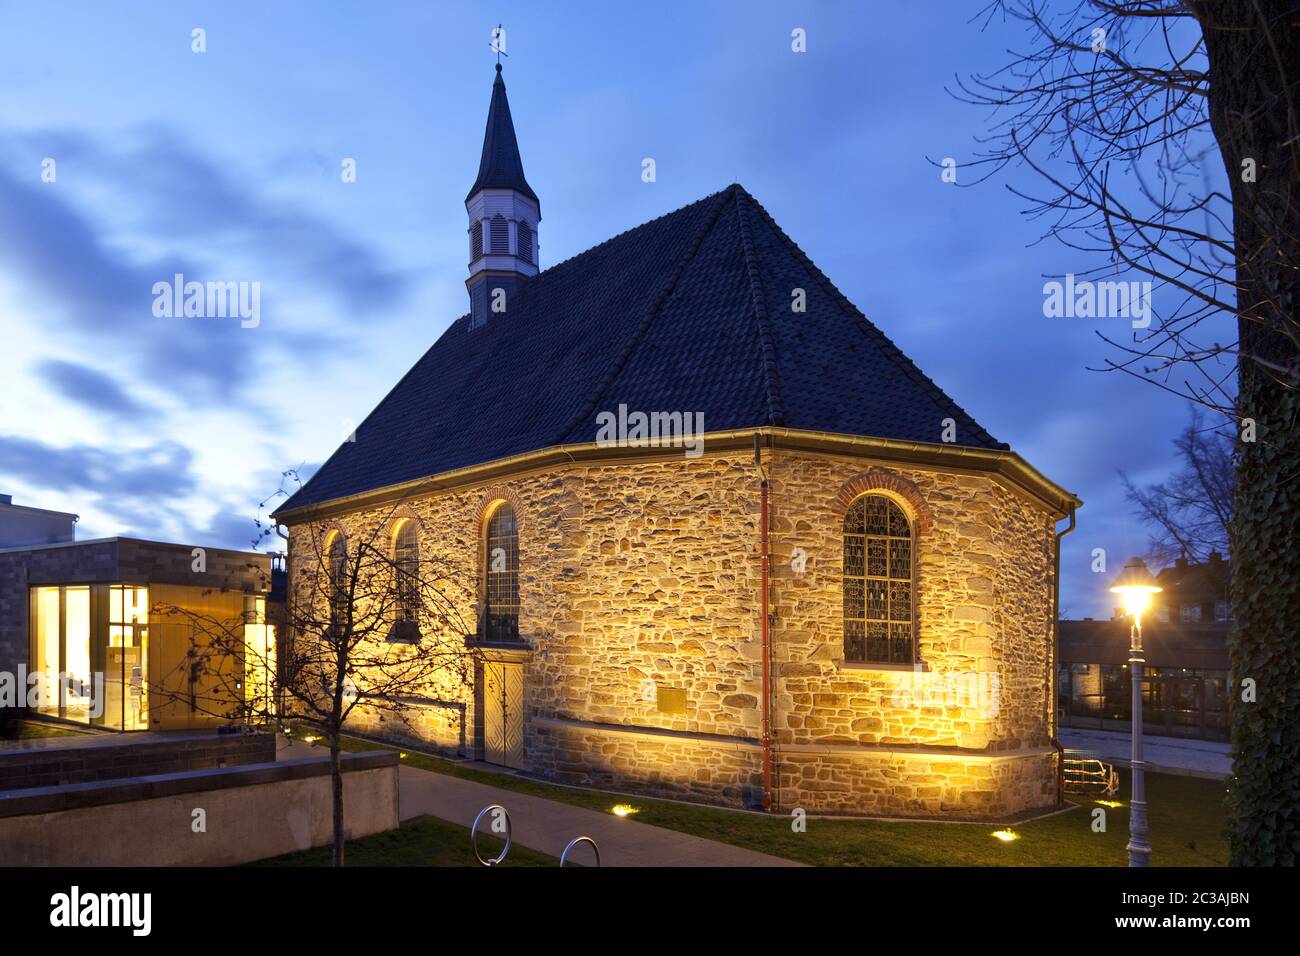 Beleuchtete Kirche am alten Markt am Abend, Wattenscheid, Bochum, Deutschland, Europa Stockfoto